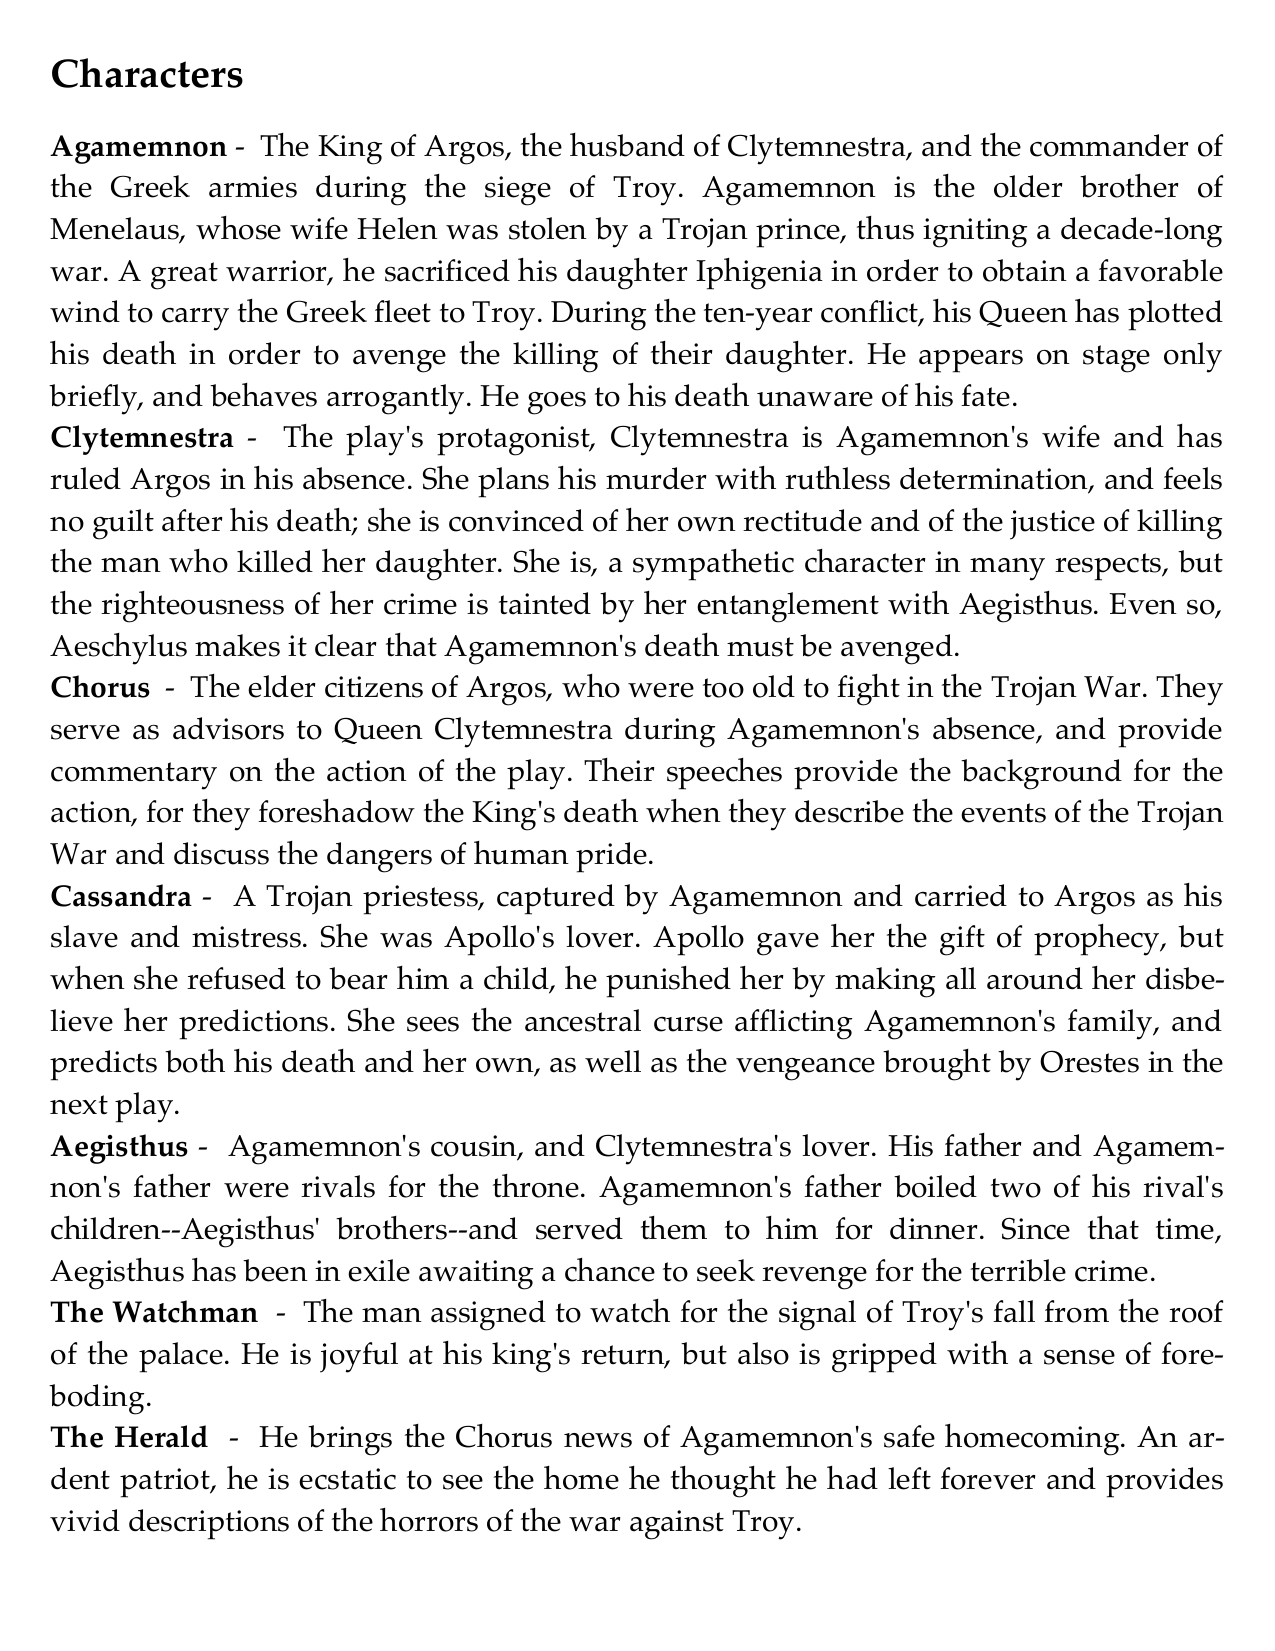 agamemnon analysis